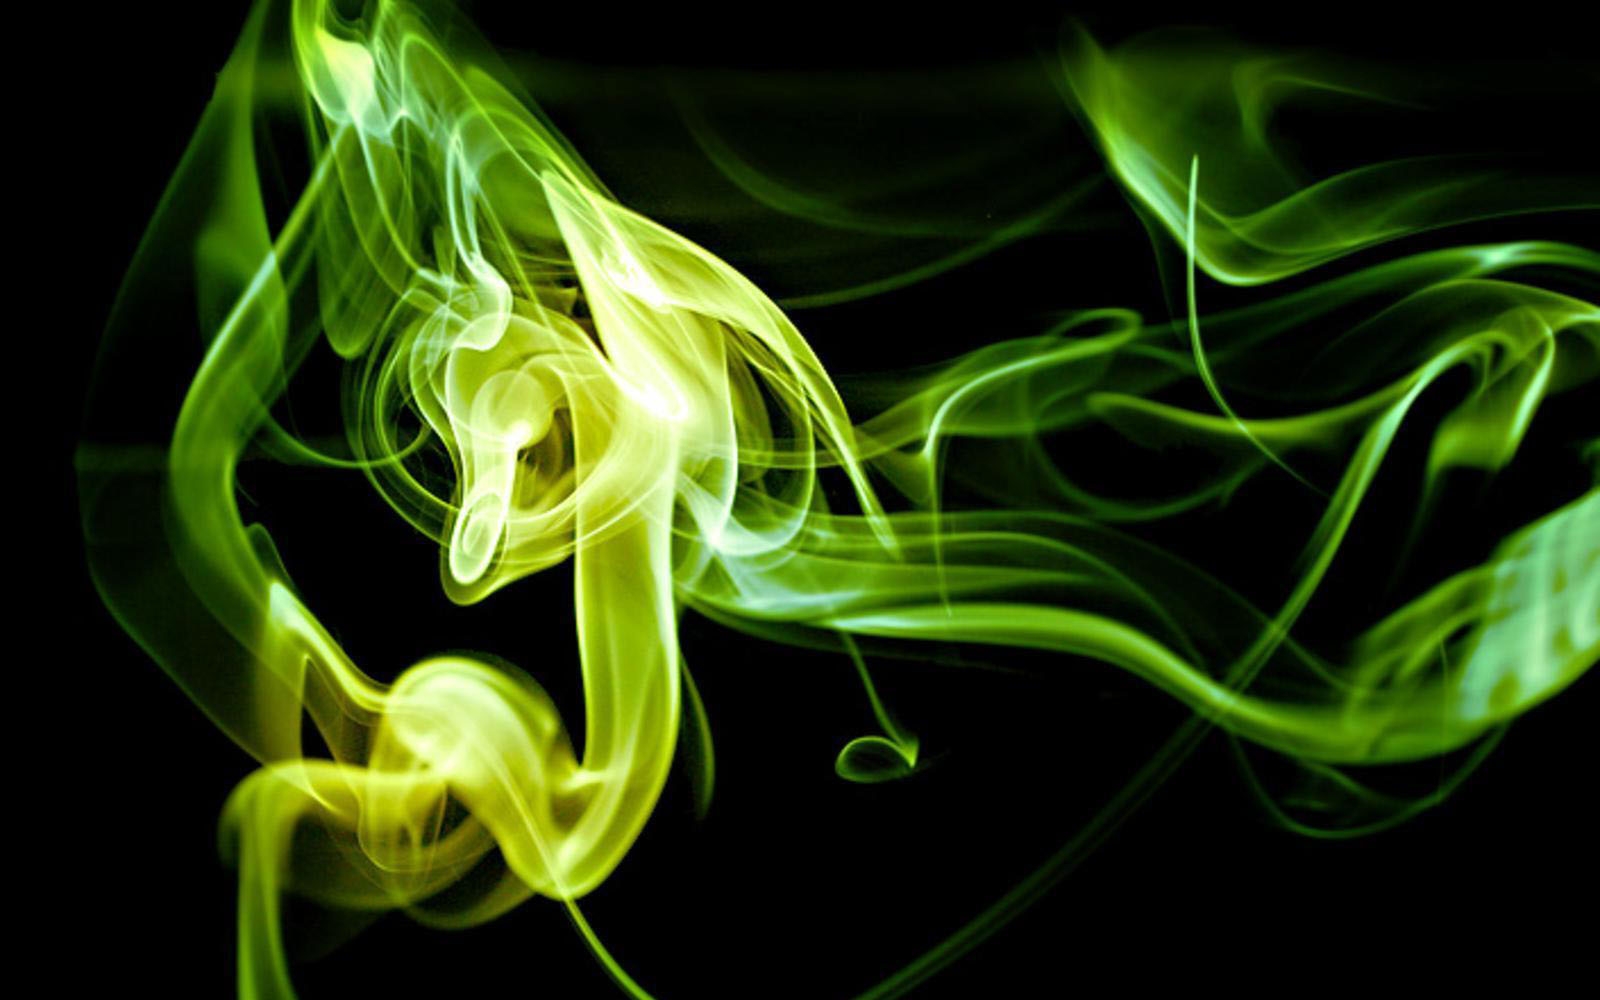 Green Smoke Wallpaper HD Pretty